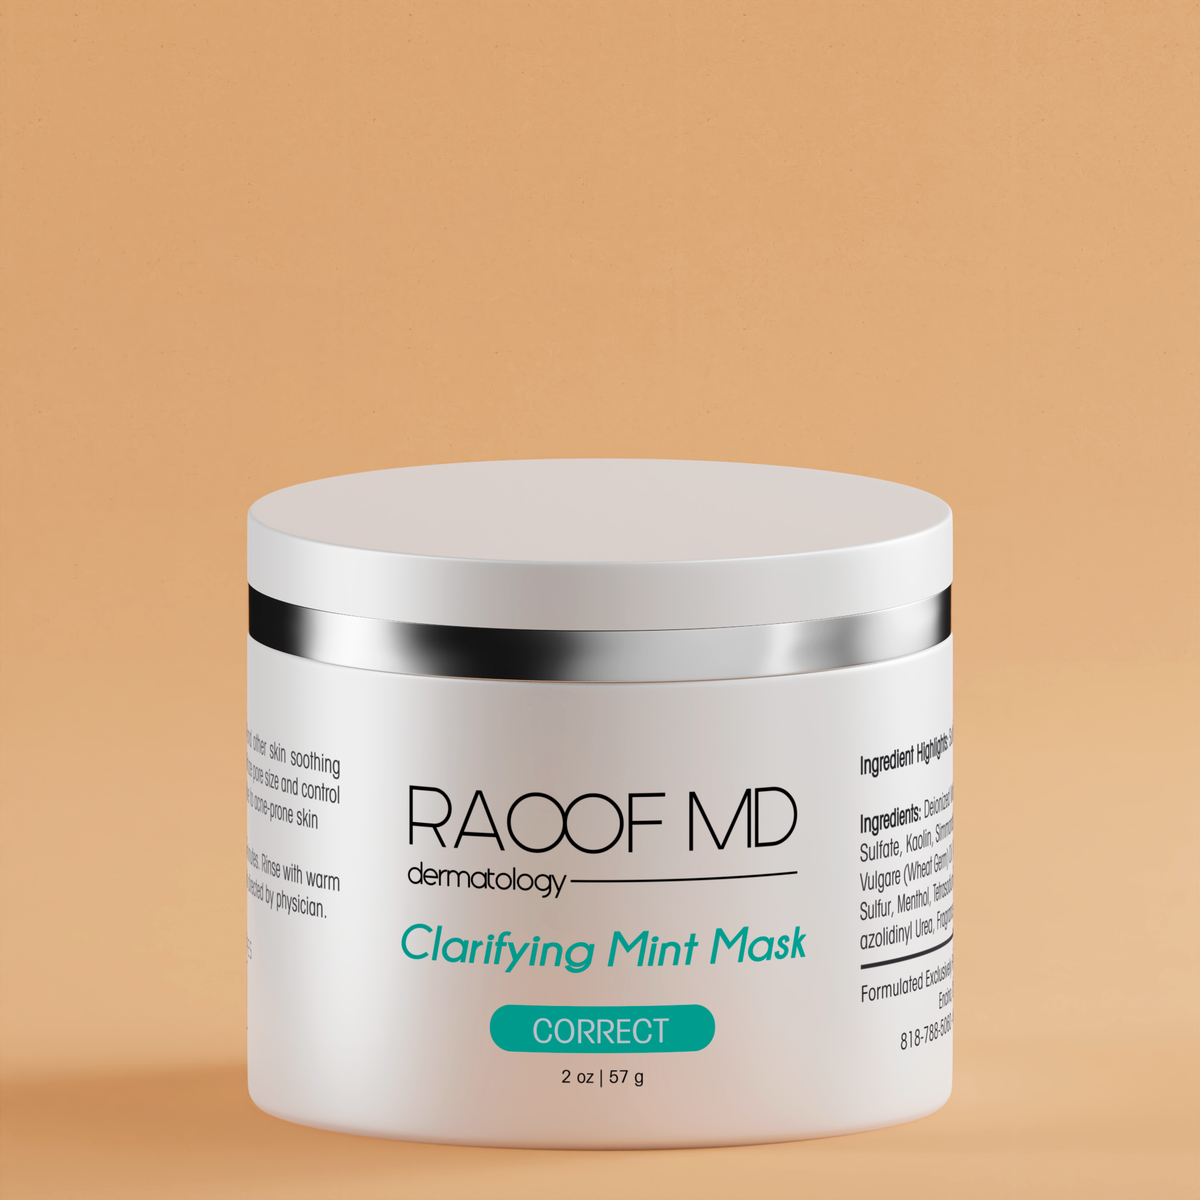 Clarifying Mint Mask RAOOF MD Dermatology bottle